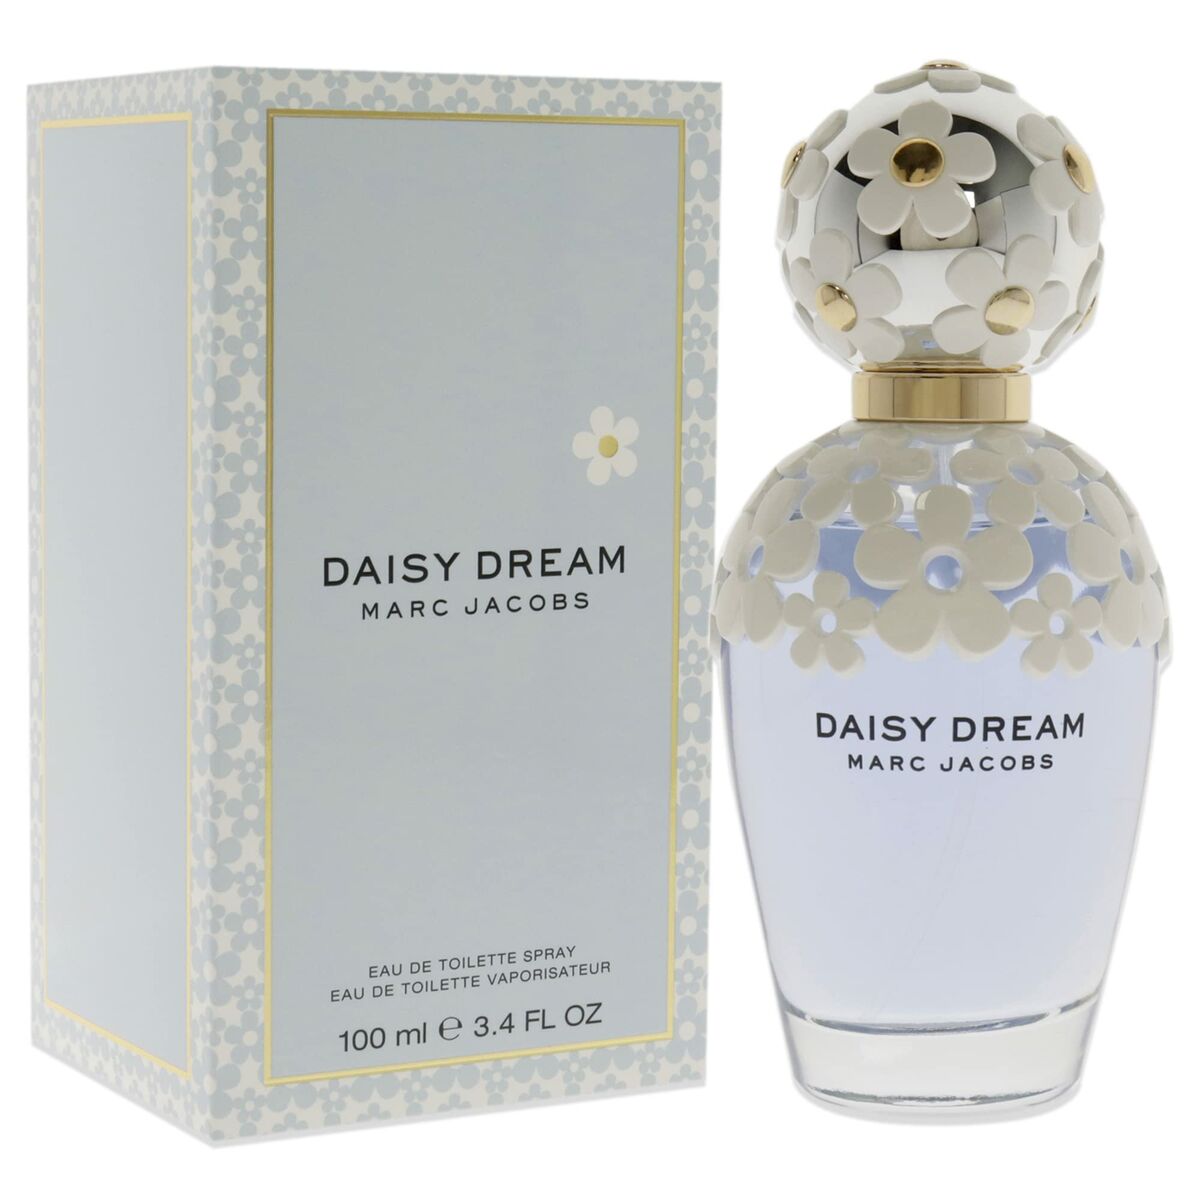 Damesparfum Marc Jacobs EDT EDT 100 ml Daisy Dream